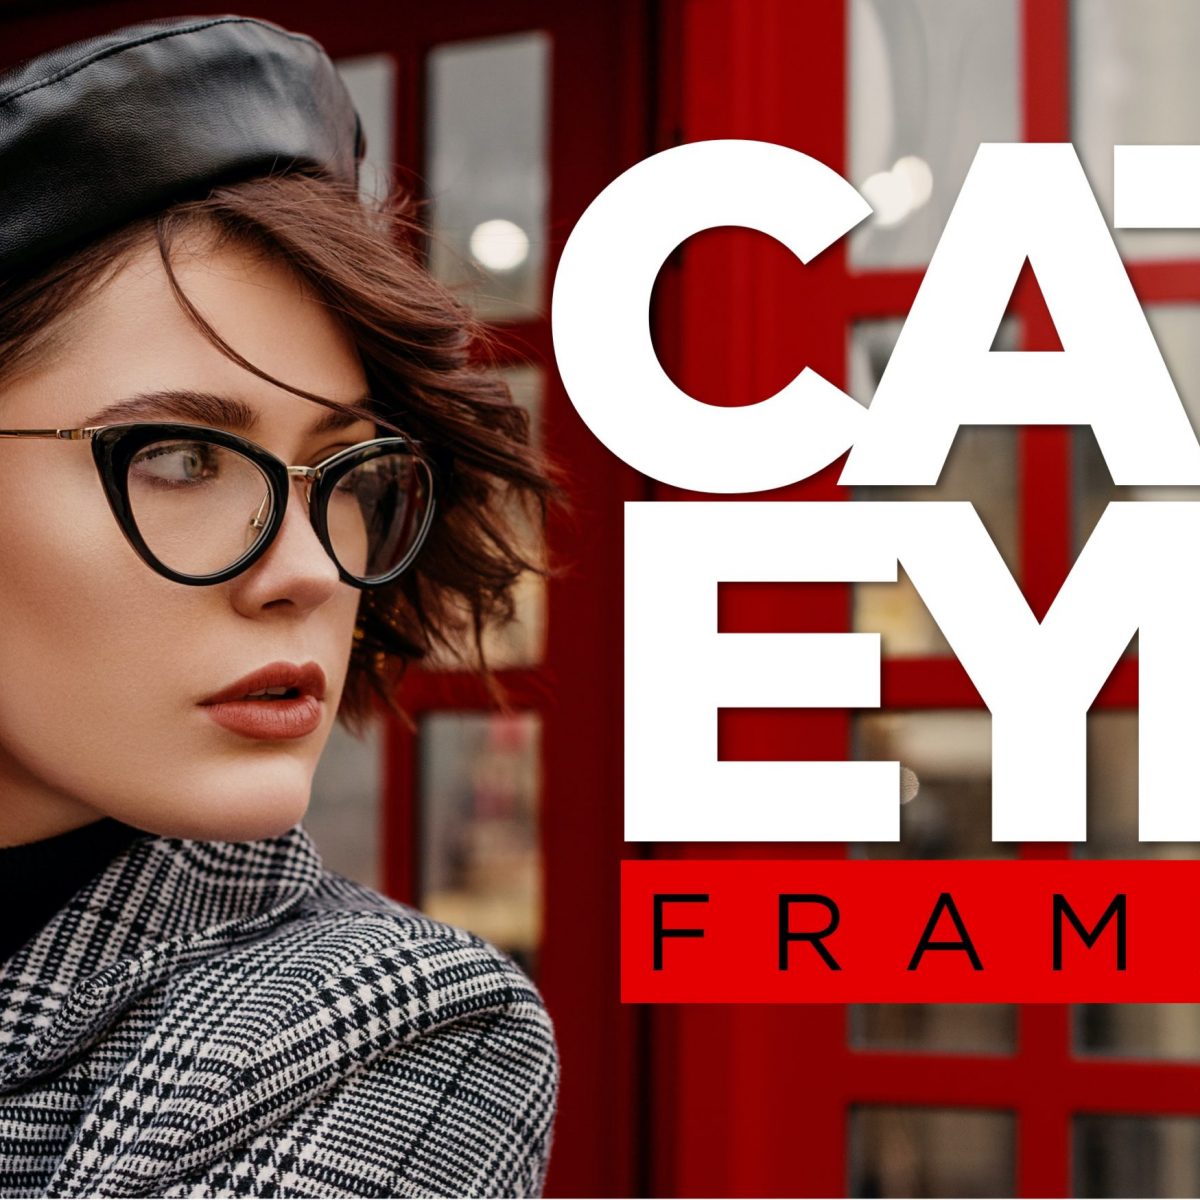 Cat Eye Eyeglasses - Eyeglasses